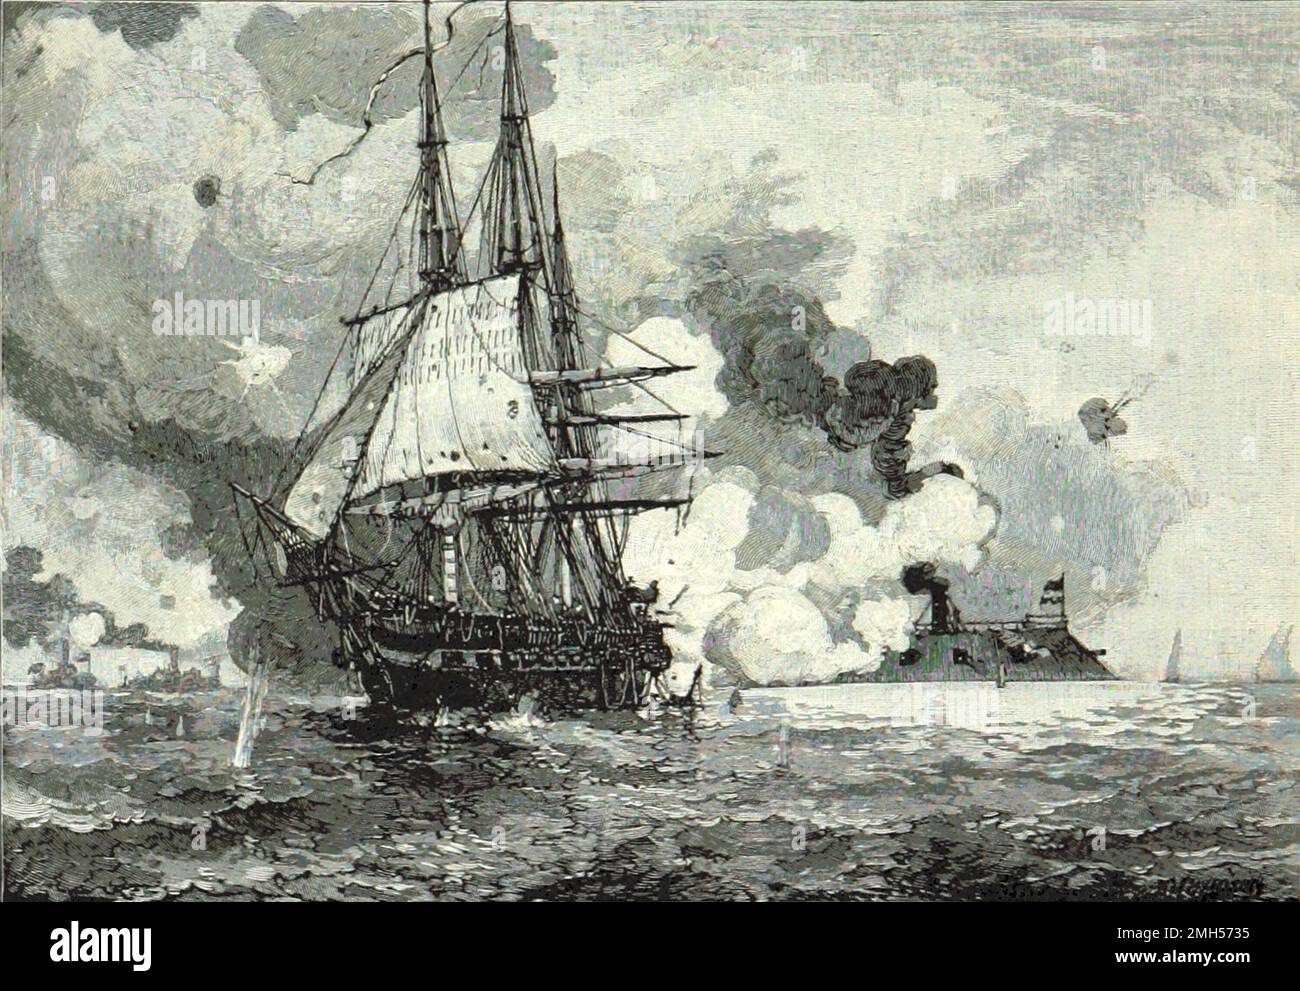 La bataille de Hampton Roads (également la bataille du moniteur et de la Virginie ou la bataille d'Ironclads) était une bataille de la guerre civile américaine qui a eu lieu les 8 et 9th mars 1862 dans les voies maritimes de Hampton Roads. C'était la première bataille navale entre des navires modernes en métal au lieu de bateaux à voile en bois. La vulnérabilité des navires en bois était évidente pour tous et la bataille marque le début de l'âge de dreadnought. Cette image représente la CSS Virginia (USS Merrimac rebaptisé) attaquant le Congrès USS. Banque D'Images